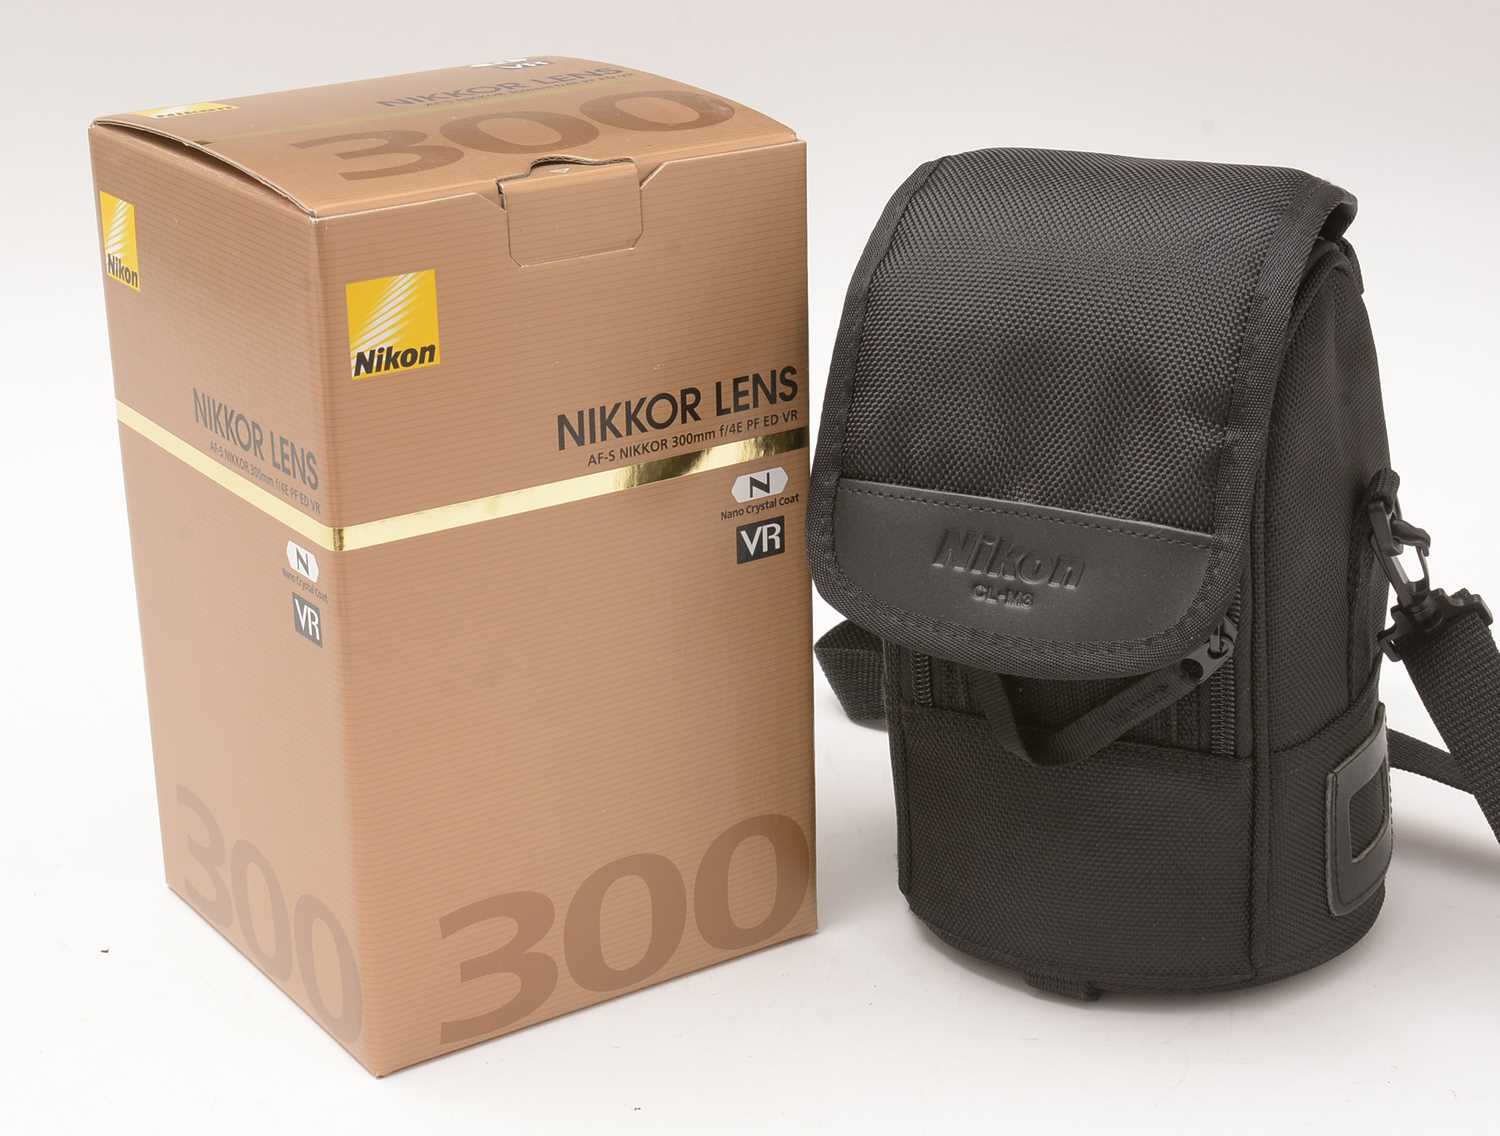 360 - A Nikon lens.